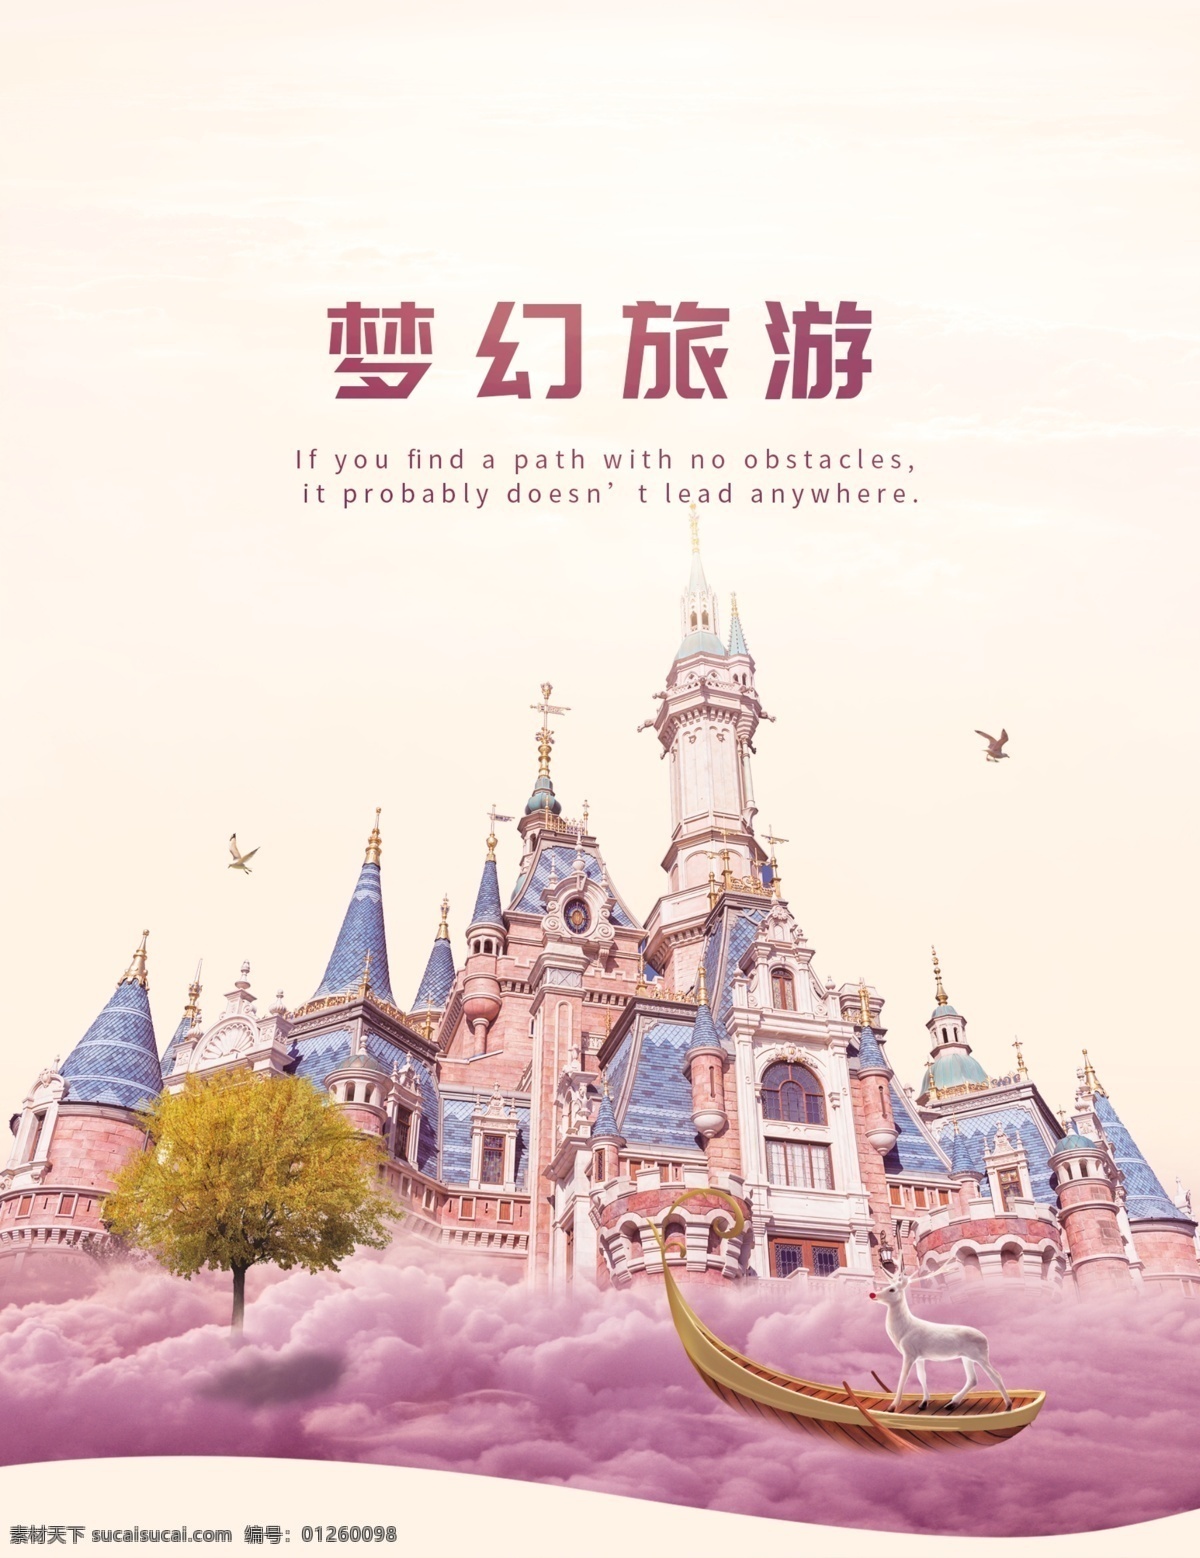 唯美 浪漫 梦幻 仙境 童话 治愈 风 旅游 画册 封面 紫色 清新